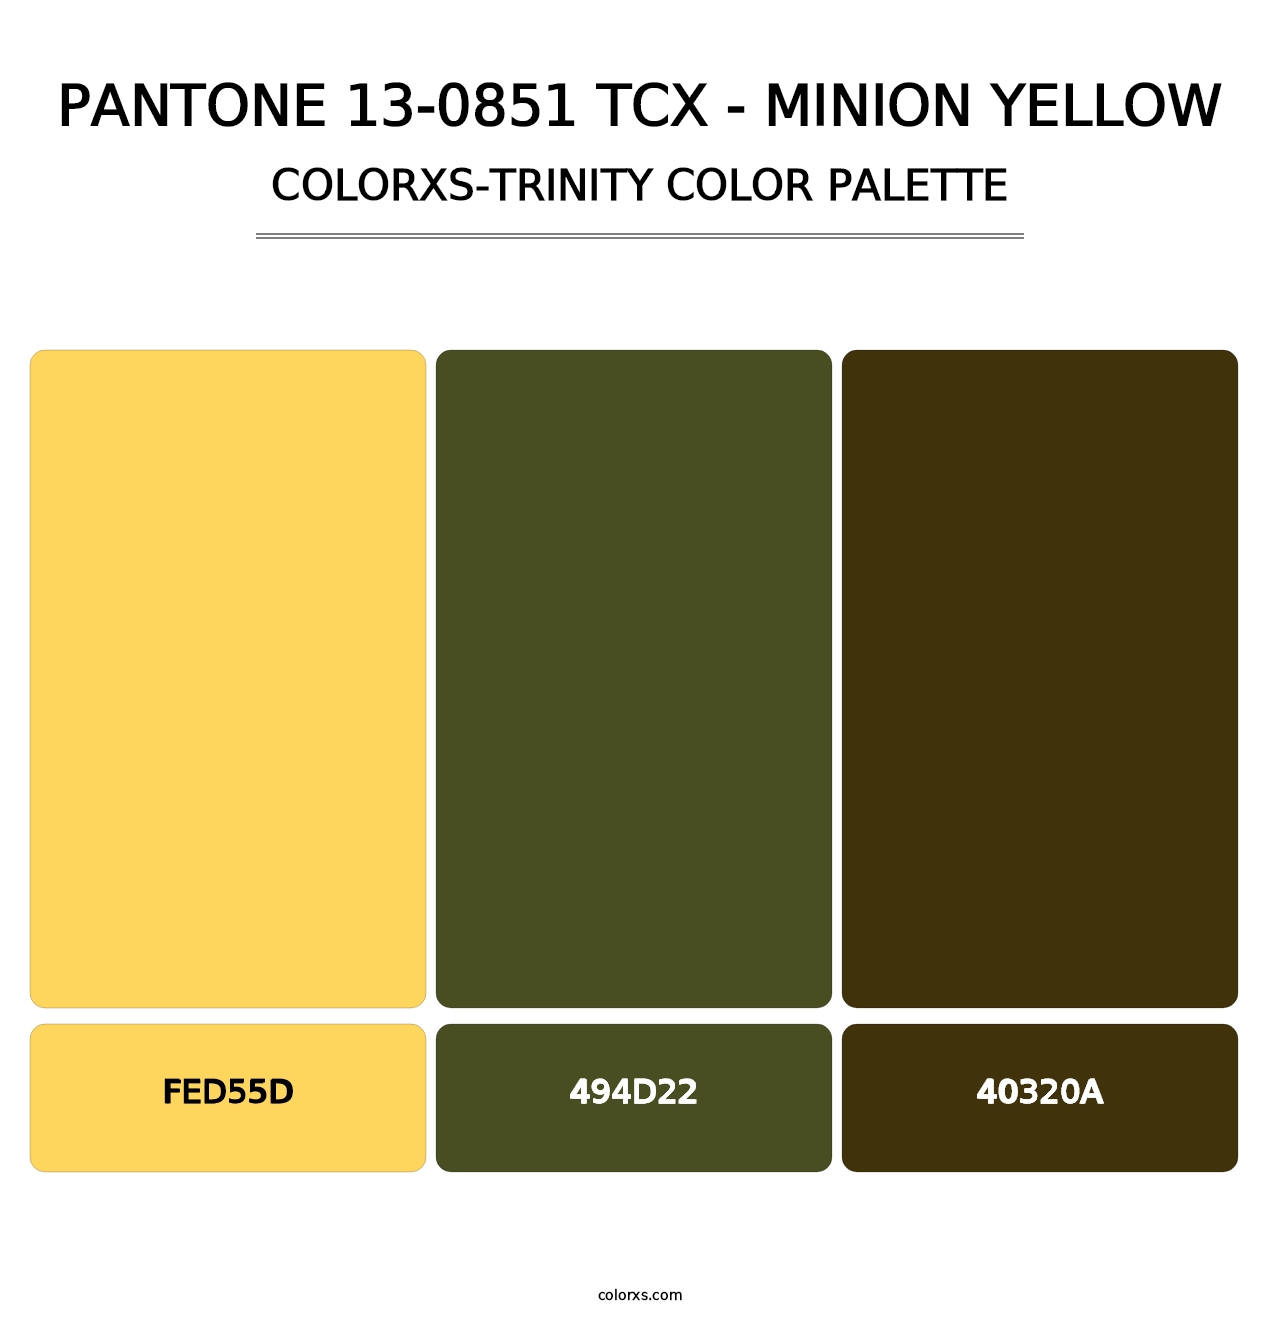 PANTONE 13-0851 TCX - Minion Yellow - Colorxs Trinity Palette